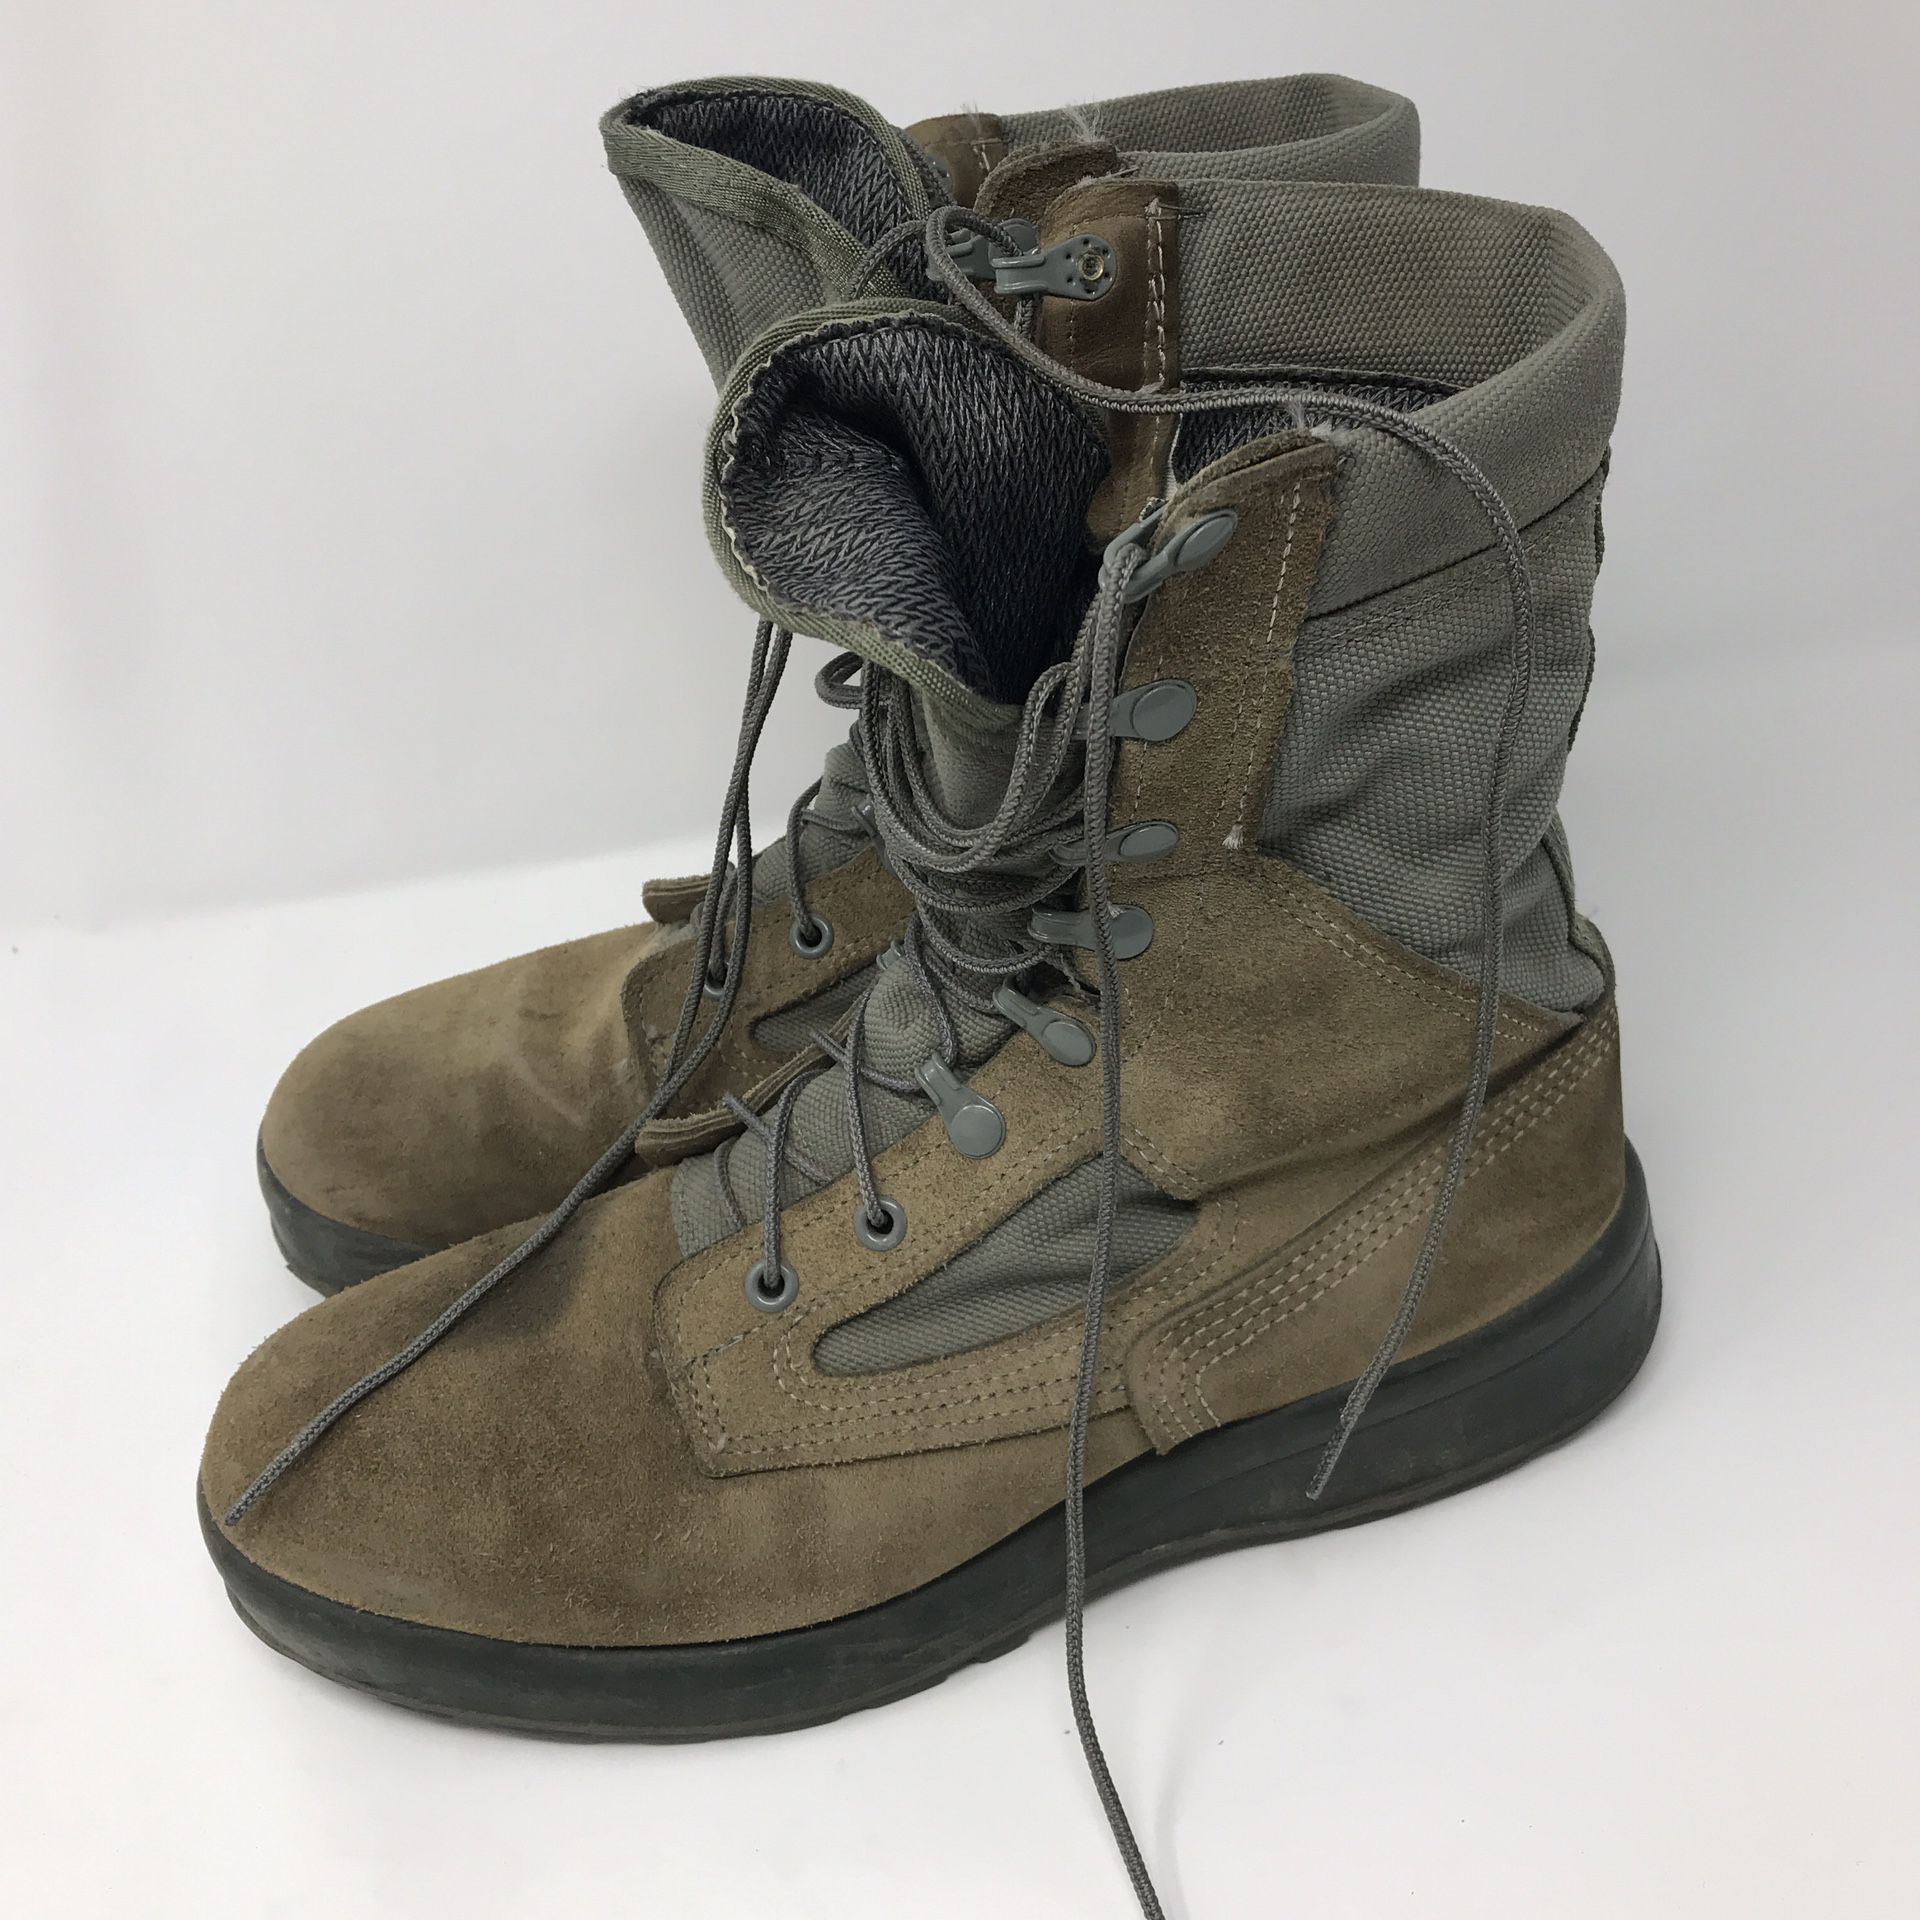 Belleville AFTW Military Combat Boots Men’s Size 9